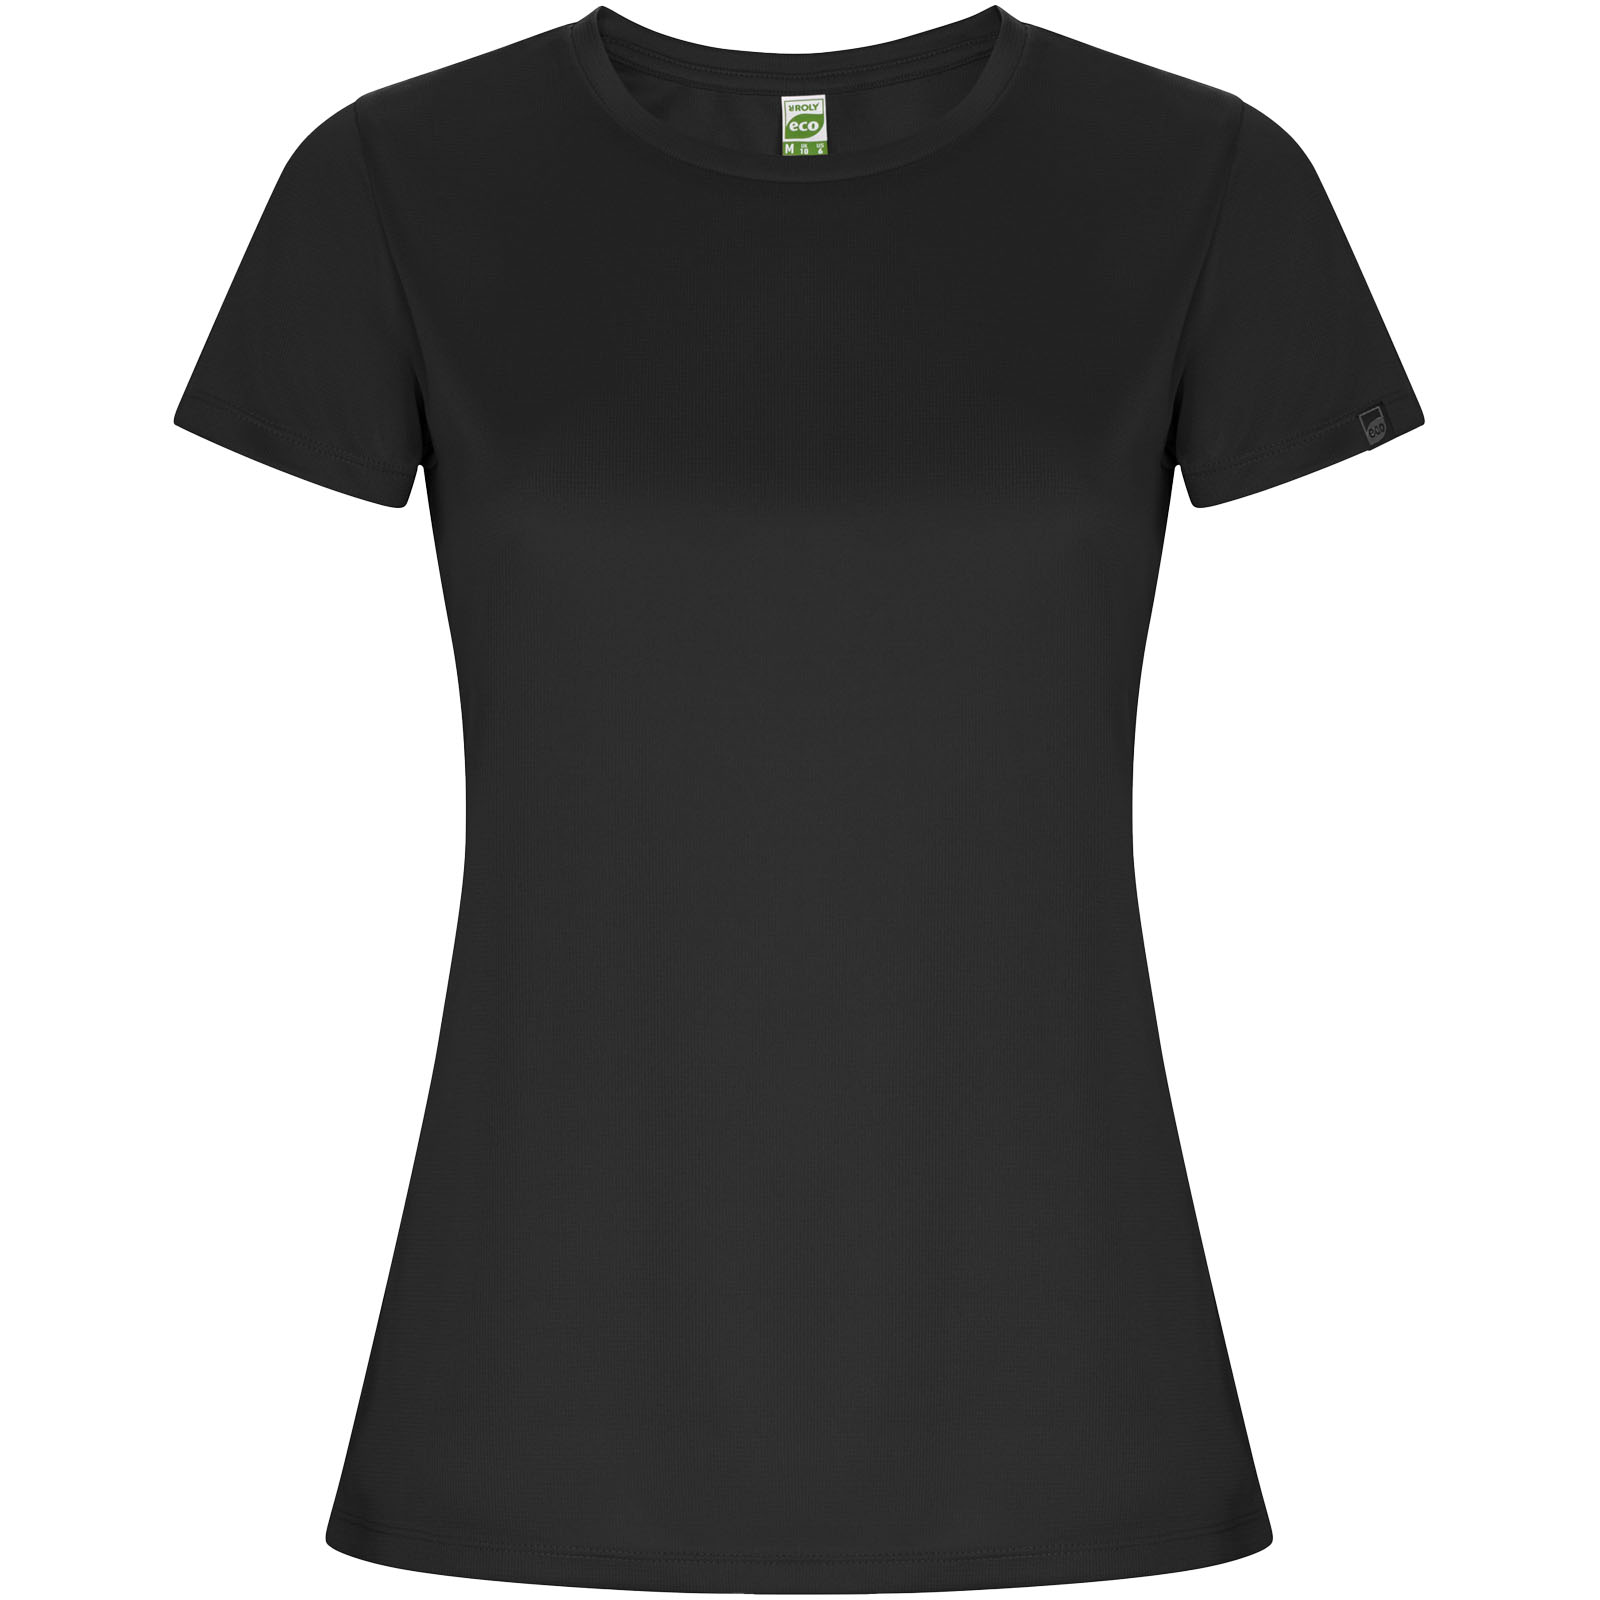 Imola kortærmet sports-t-shirt til kvinder